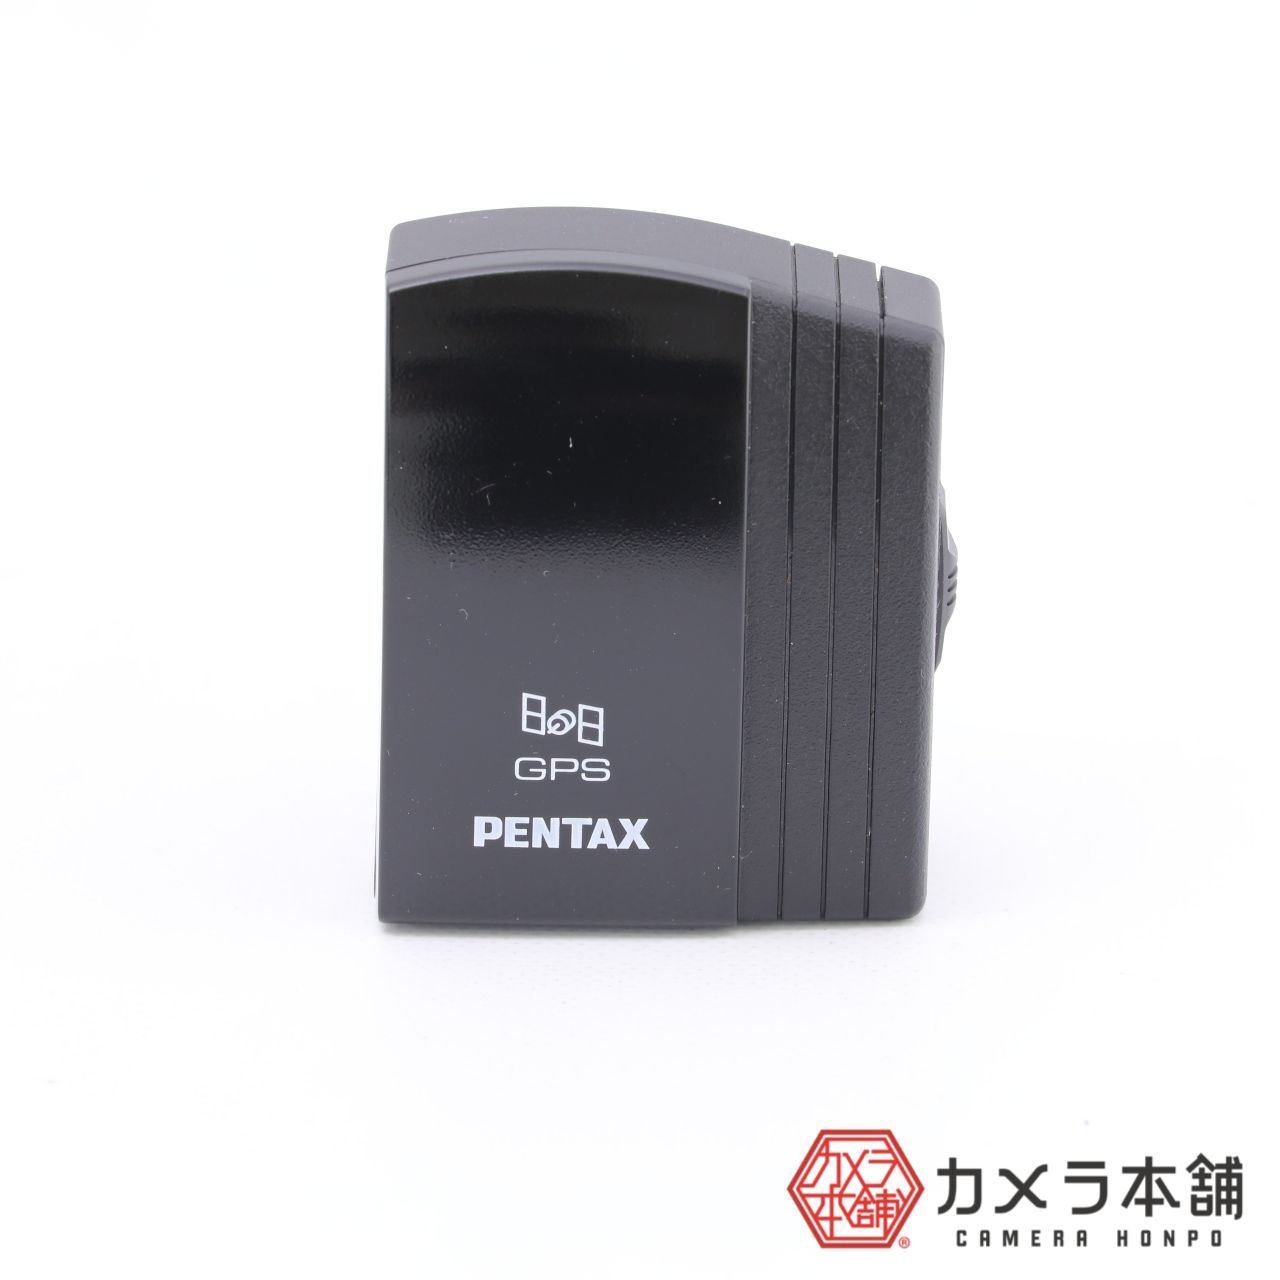 再入荷/予約販売! PENTAX GPSユニット O-GPS1 39012